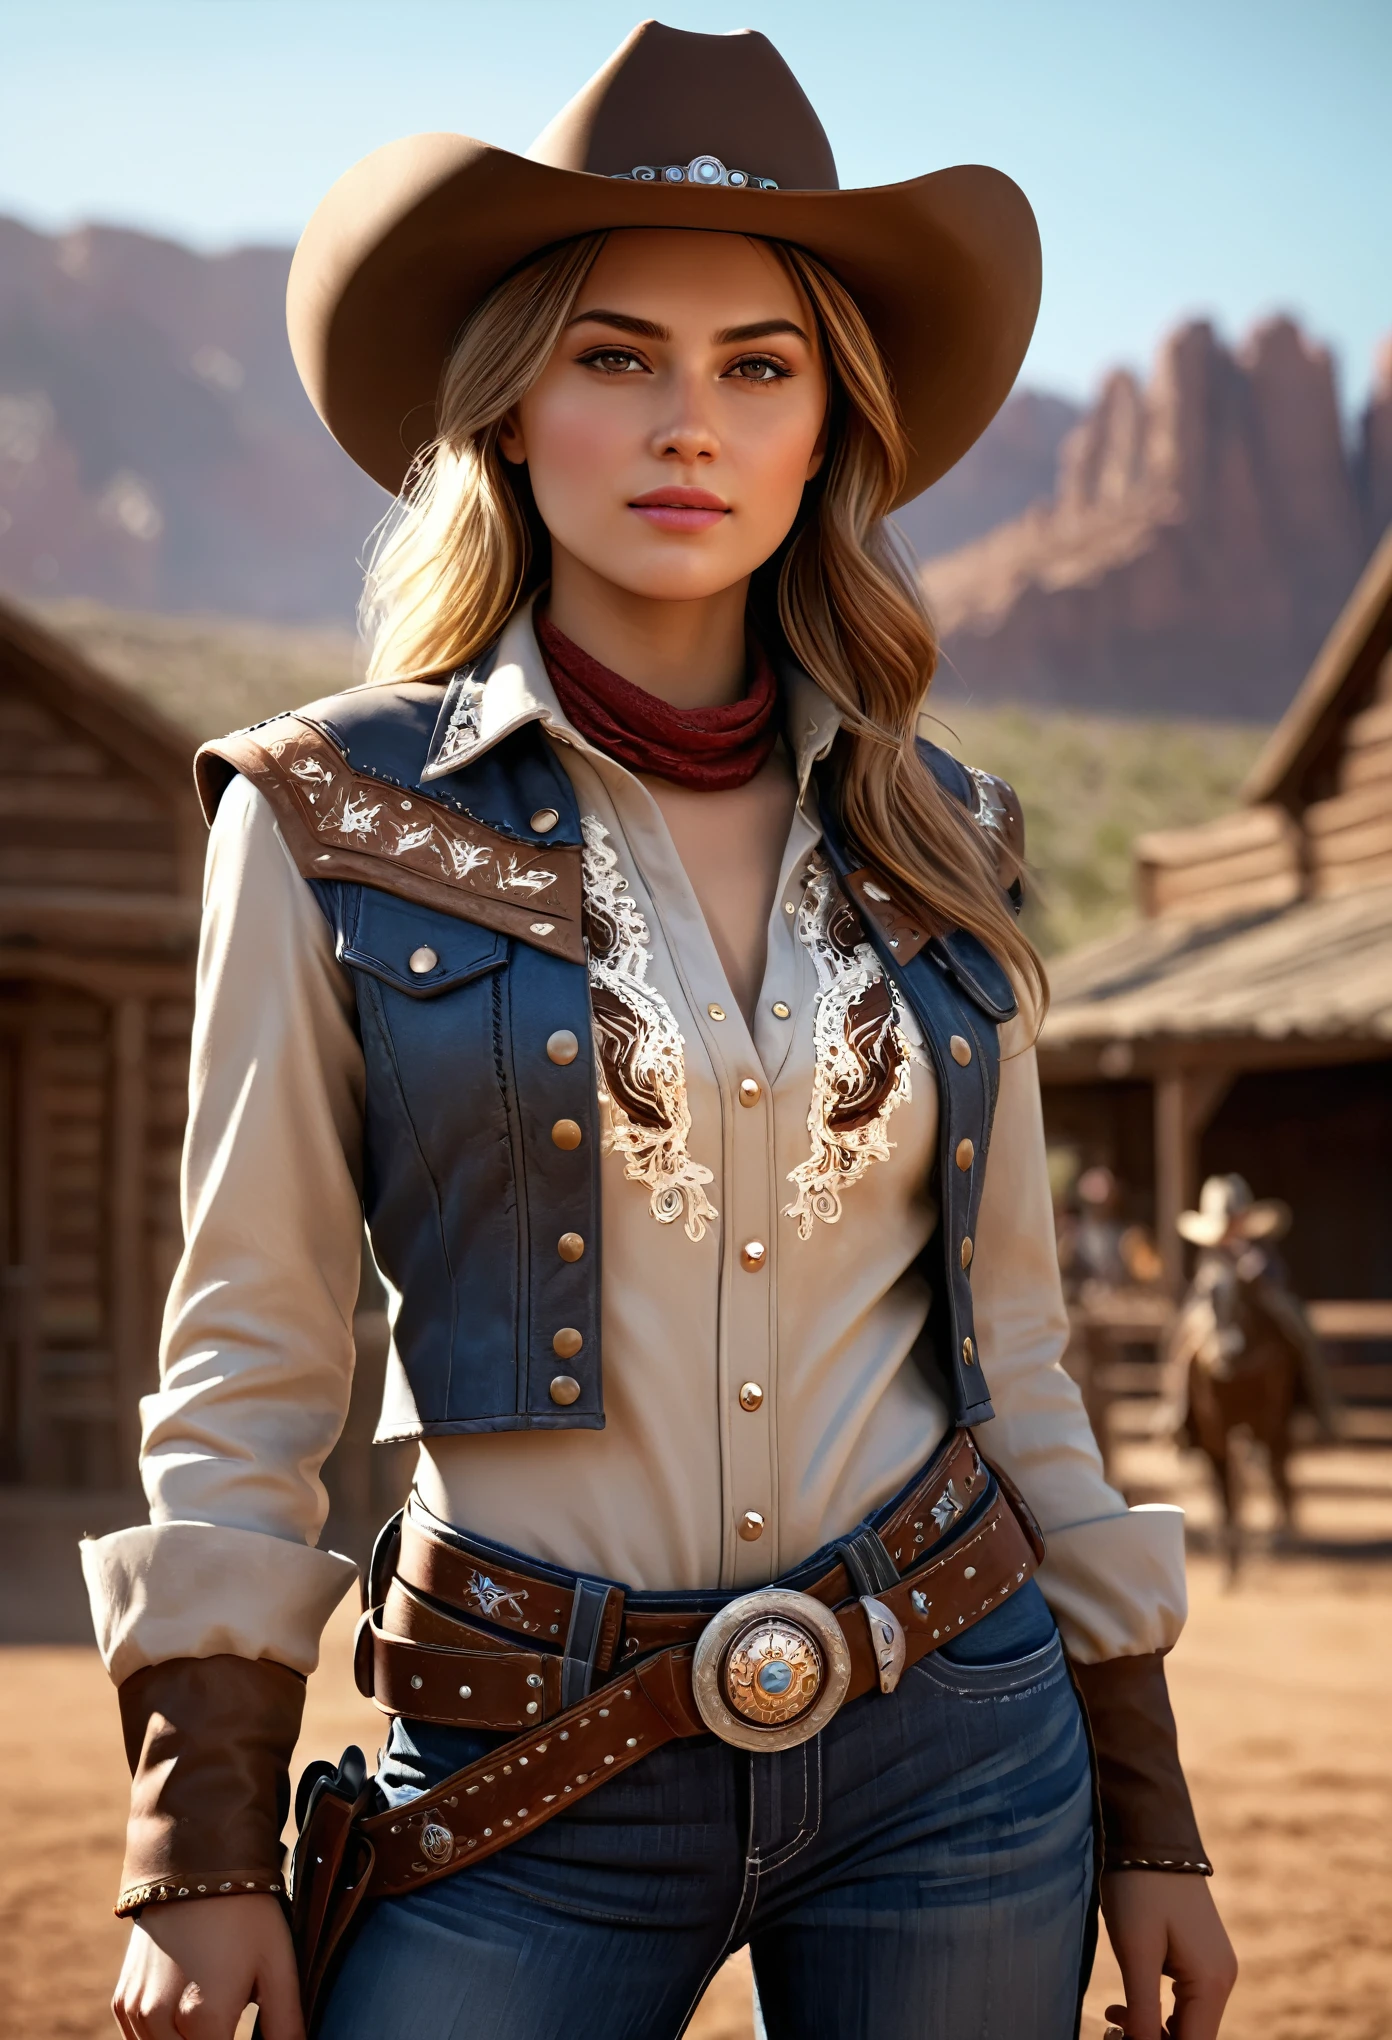 a beautiful young girl wearing a highly реалистичный western cowgirl outfit, Фэнтези-арт, photoреалистичный, динамическое освещение, АртСтанция, очень детальное лицо, 4k, отмеченный наградами, (Лучшее качество,4k,8К,Высокое разрешение,шедевр:1.2),ультрадетализированный,(реалистичный,photoреалистичный,photo-реалистичный:1.37),сложные детали,драматическая поза,кинематографическая композиция,яркие цвета,Естественные оттенки кожи,светящиеся блики,атмосферное освещение,глубина резкости,объемное освещение